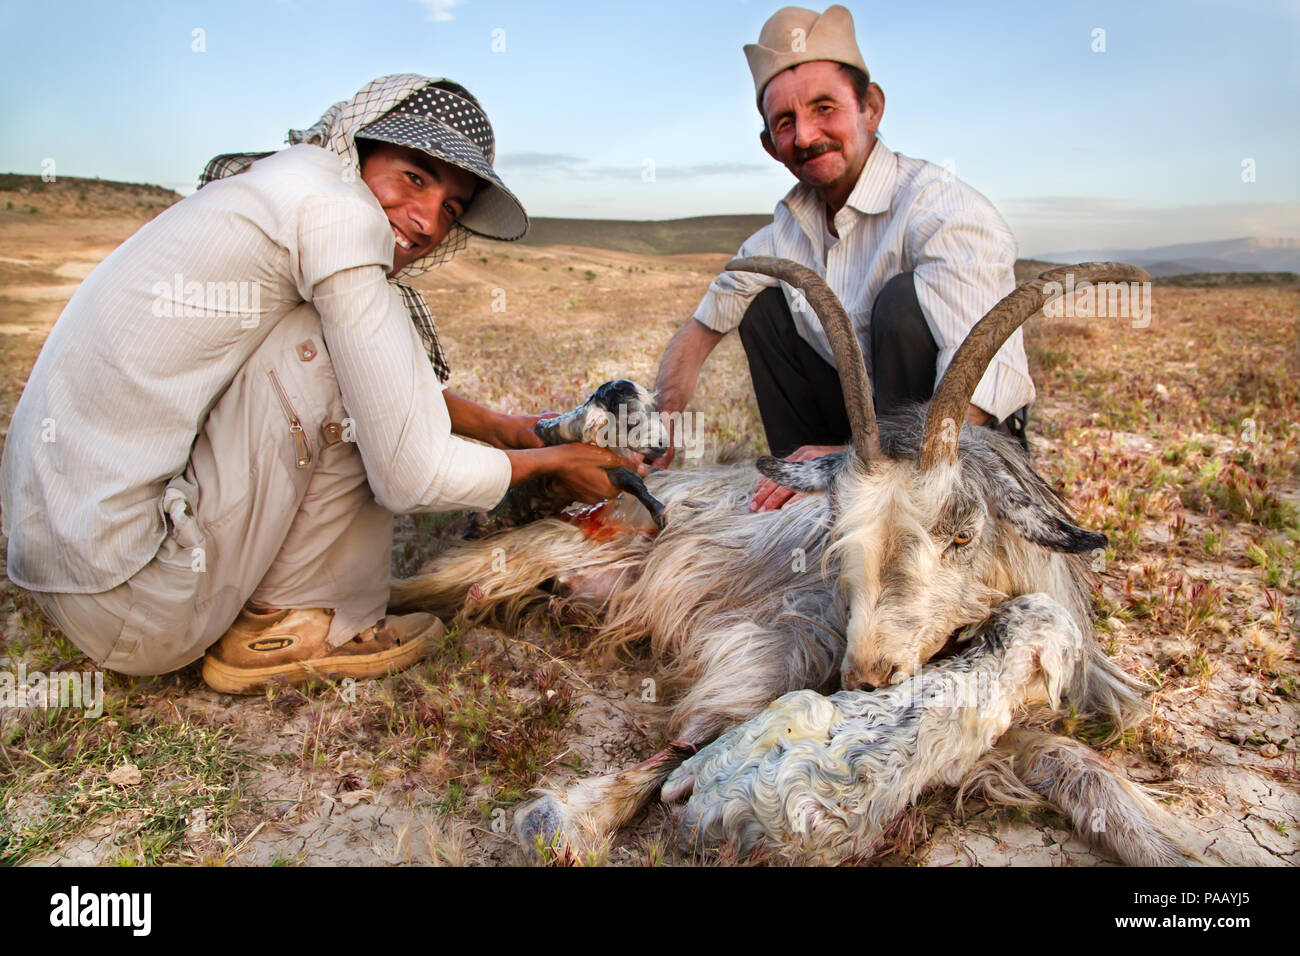 Une chèvre en donnant naissance à une communauté de peuple nomade Qashqai, Iran Banque D'Images